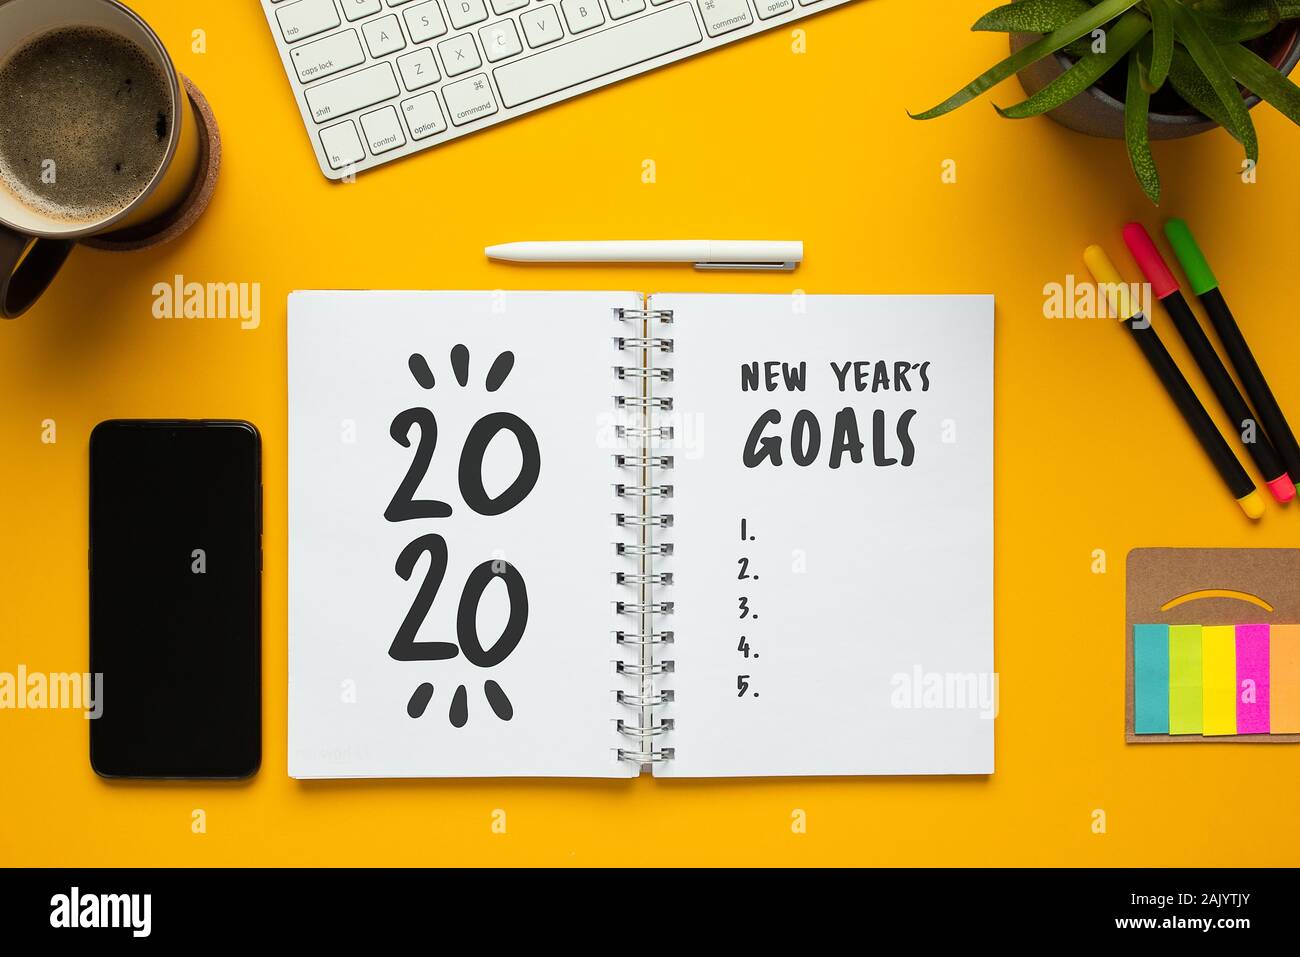 Stock photo de nouvel an 2020 portable avec liste d'objectifs et des objets sur fond jaune Banque D'Images